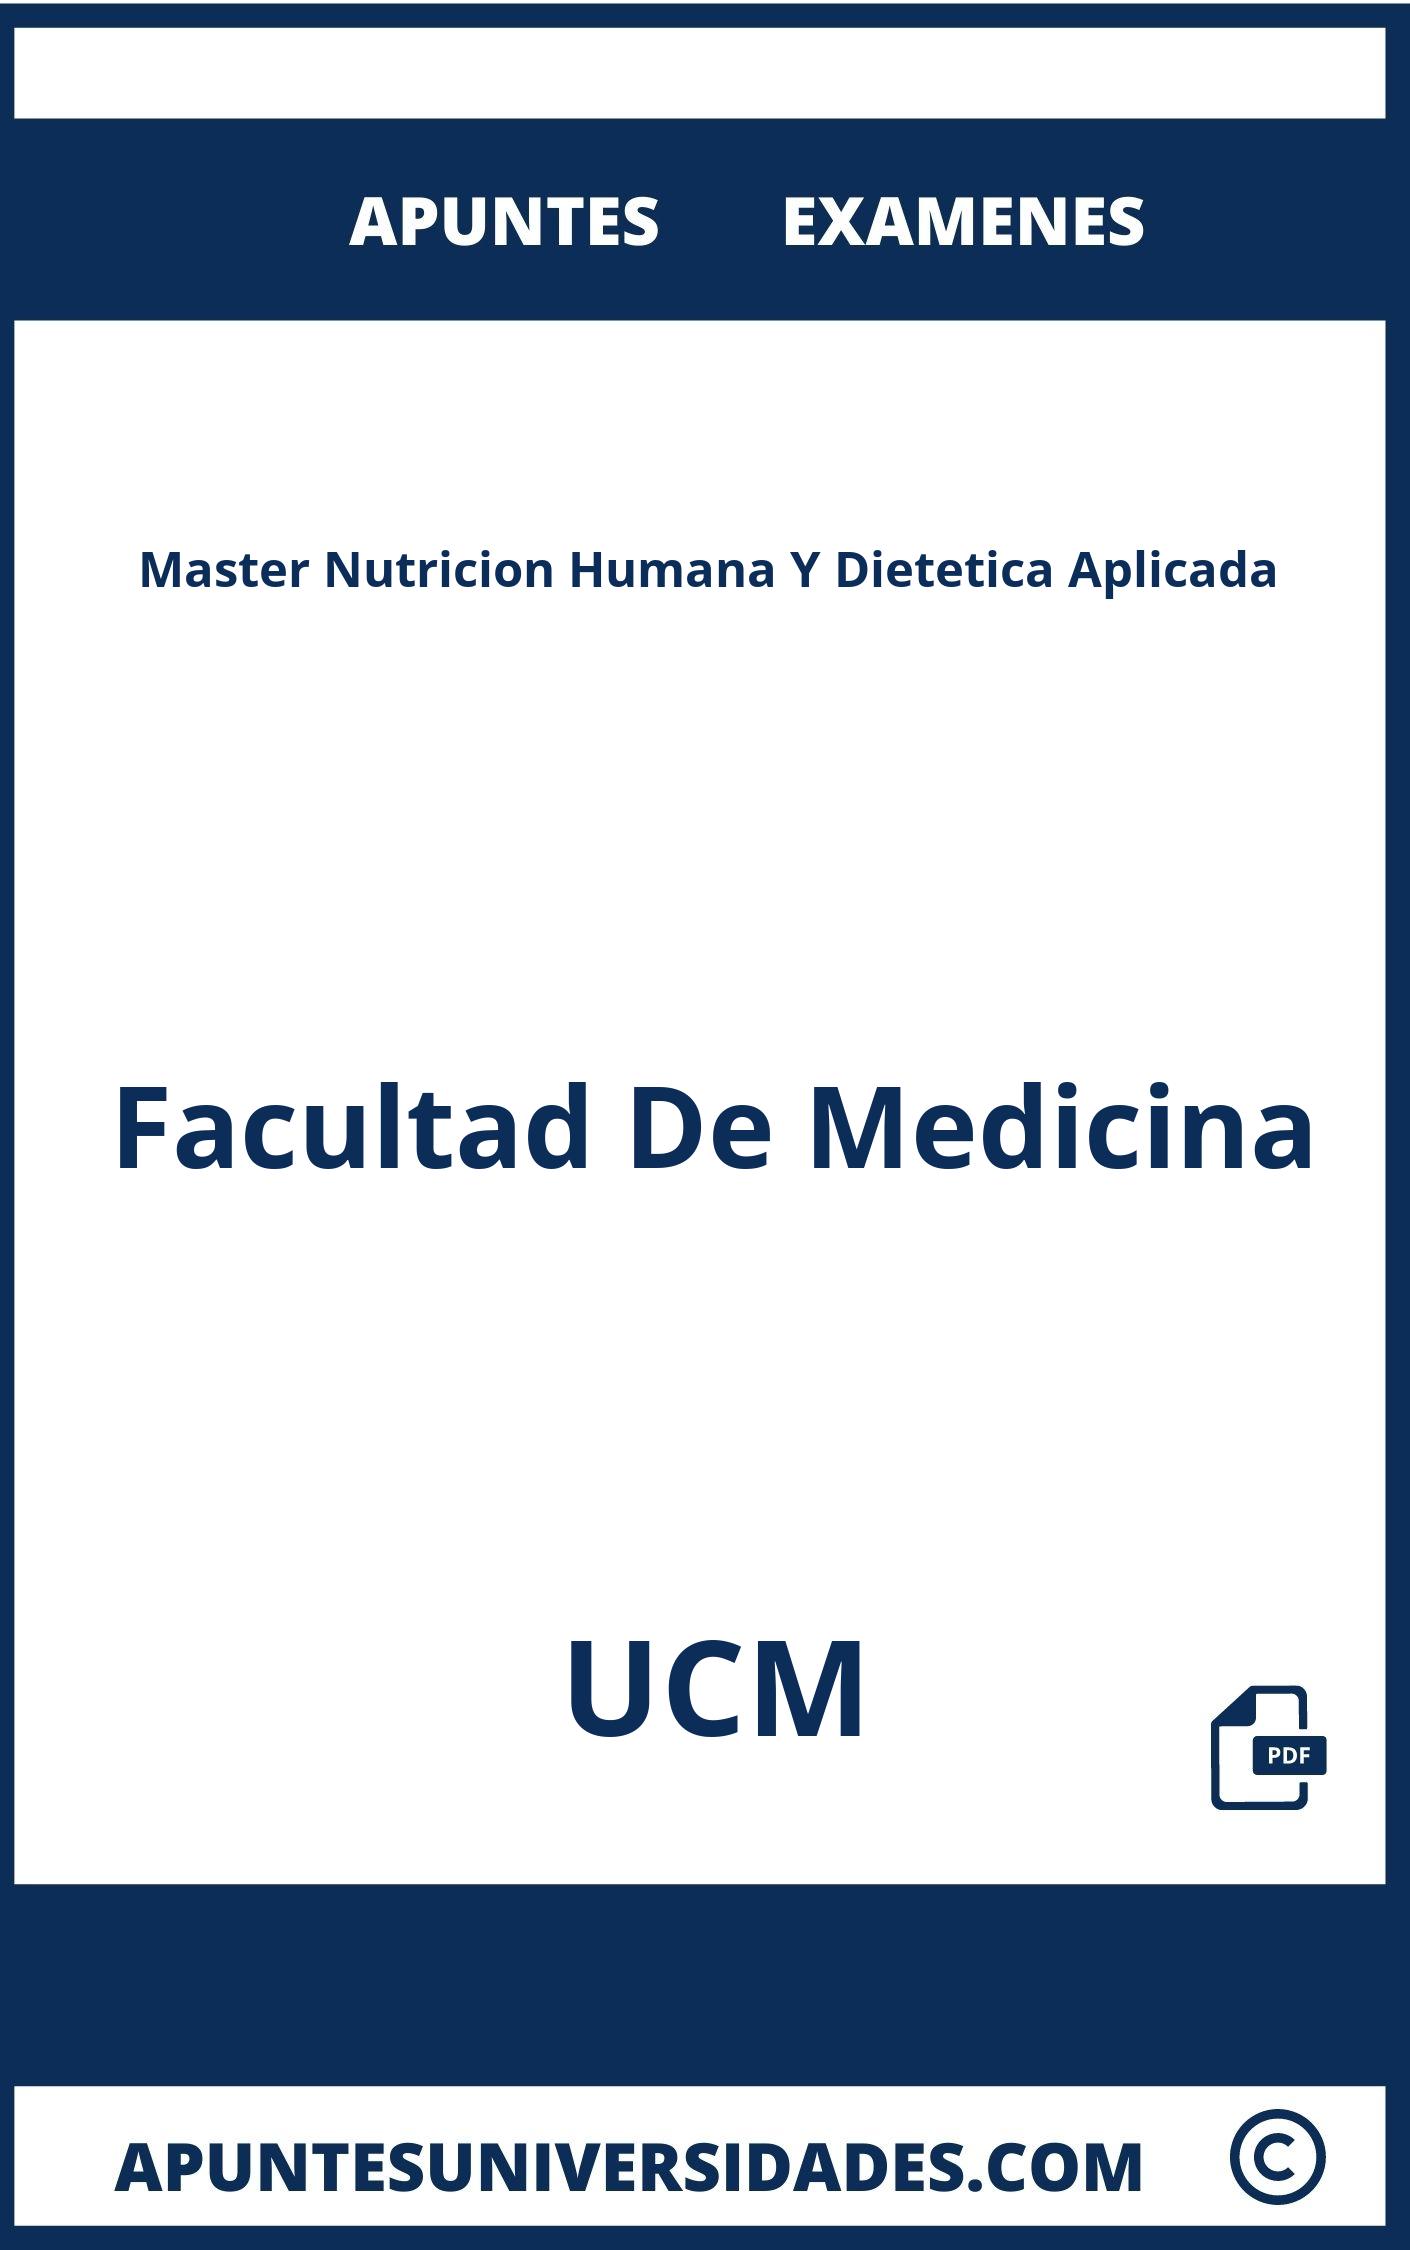 Apuntes Examenes Master Nutricion Humana Y Dietetica Aplicada UCM